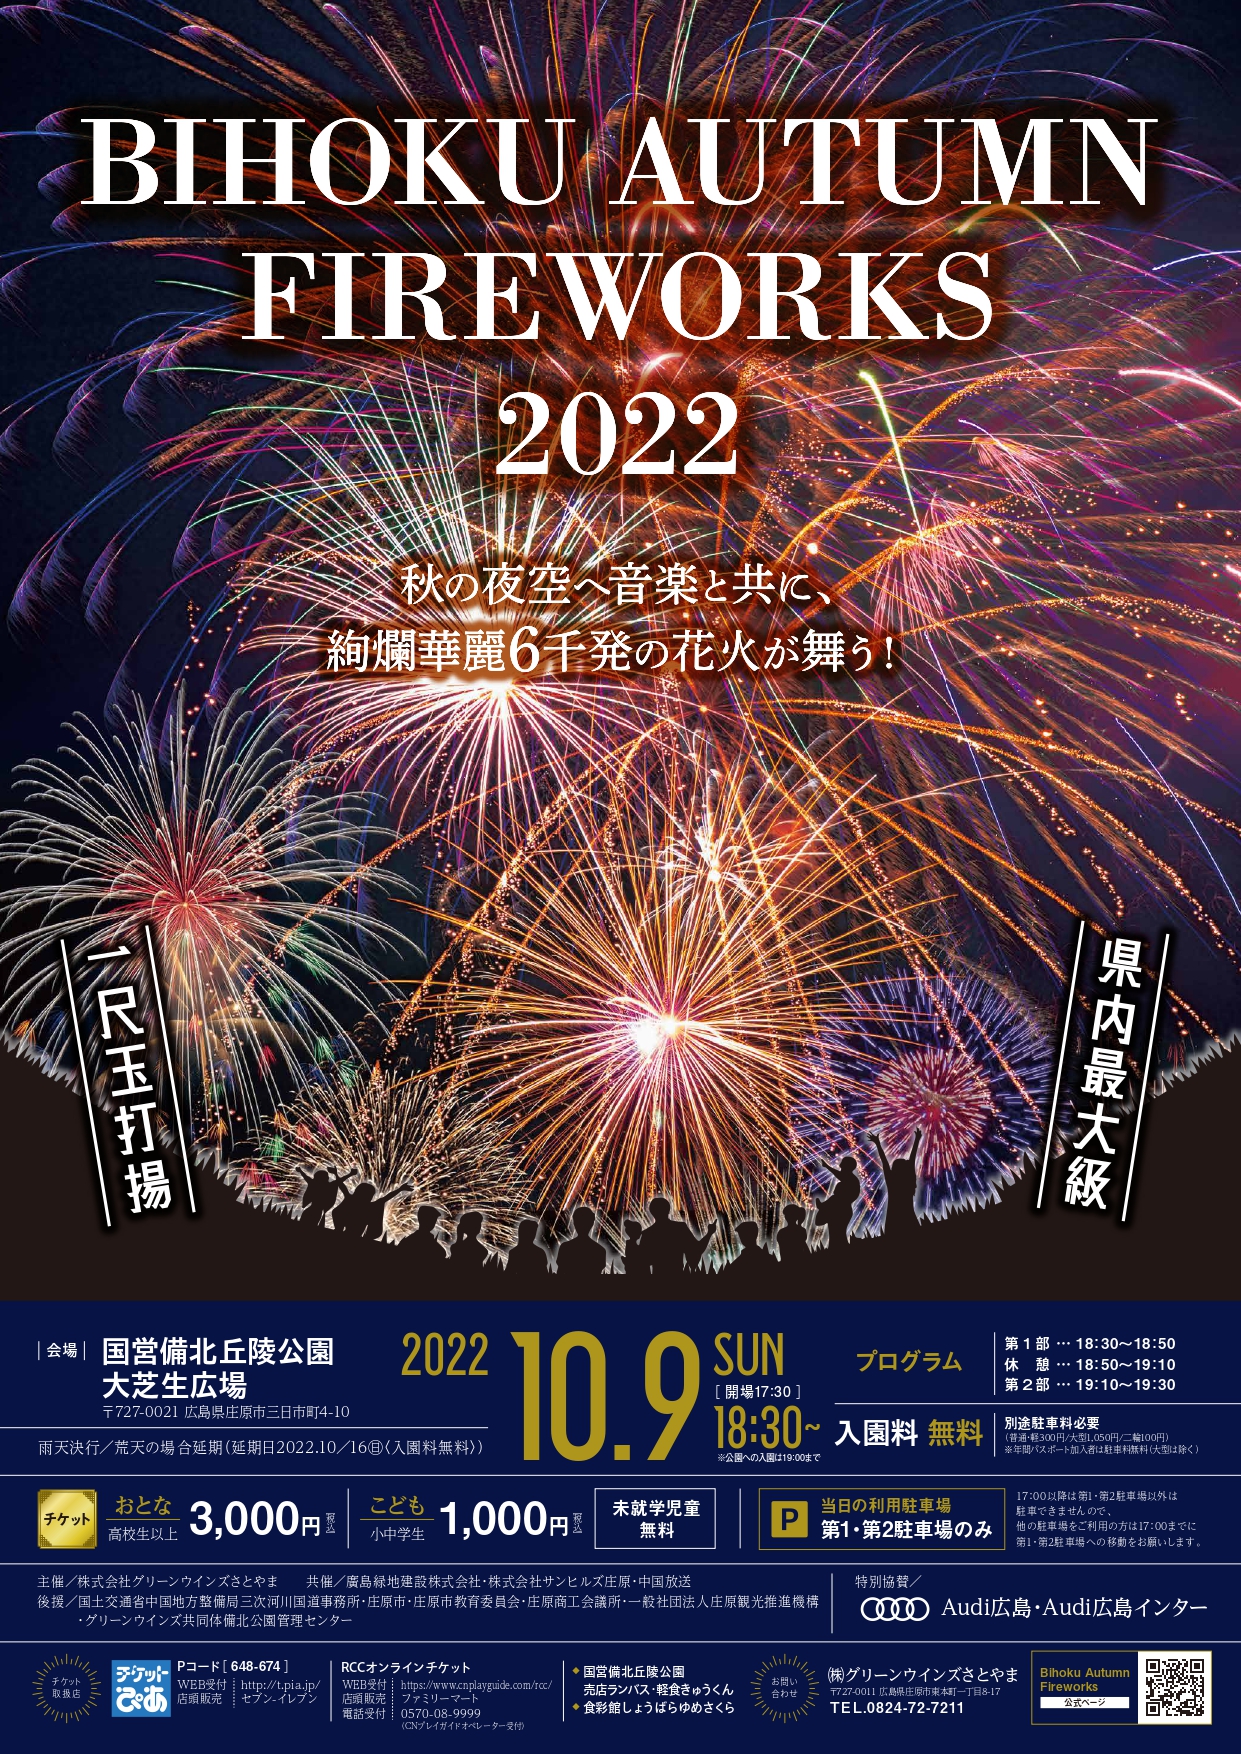 BIHOKU AUTUMN FIREWORKS 2022【※好評につき、チケット売り切れております。】